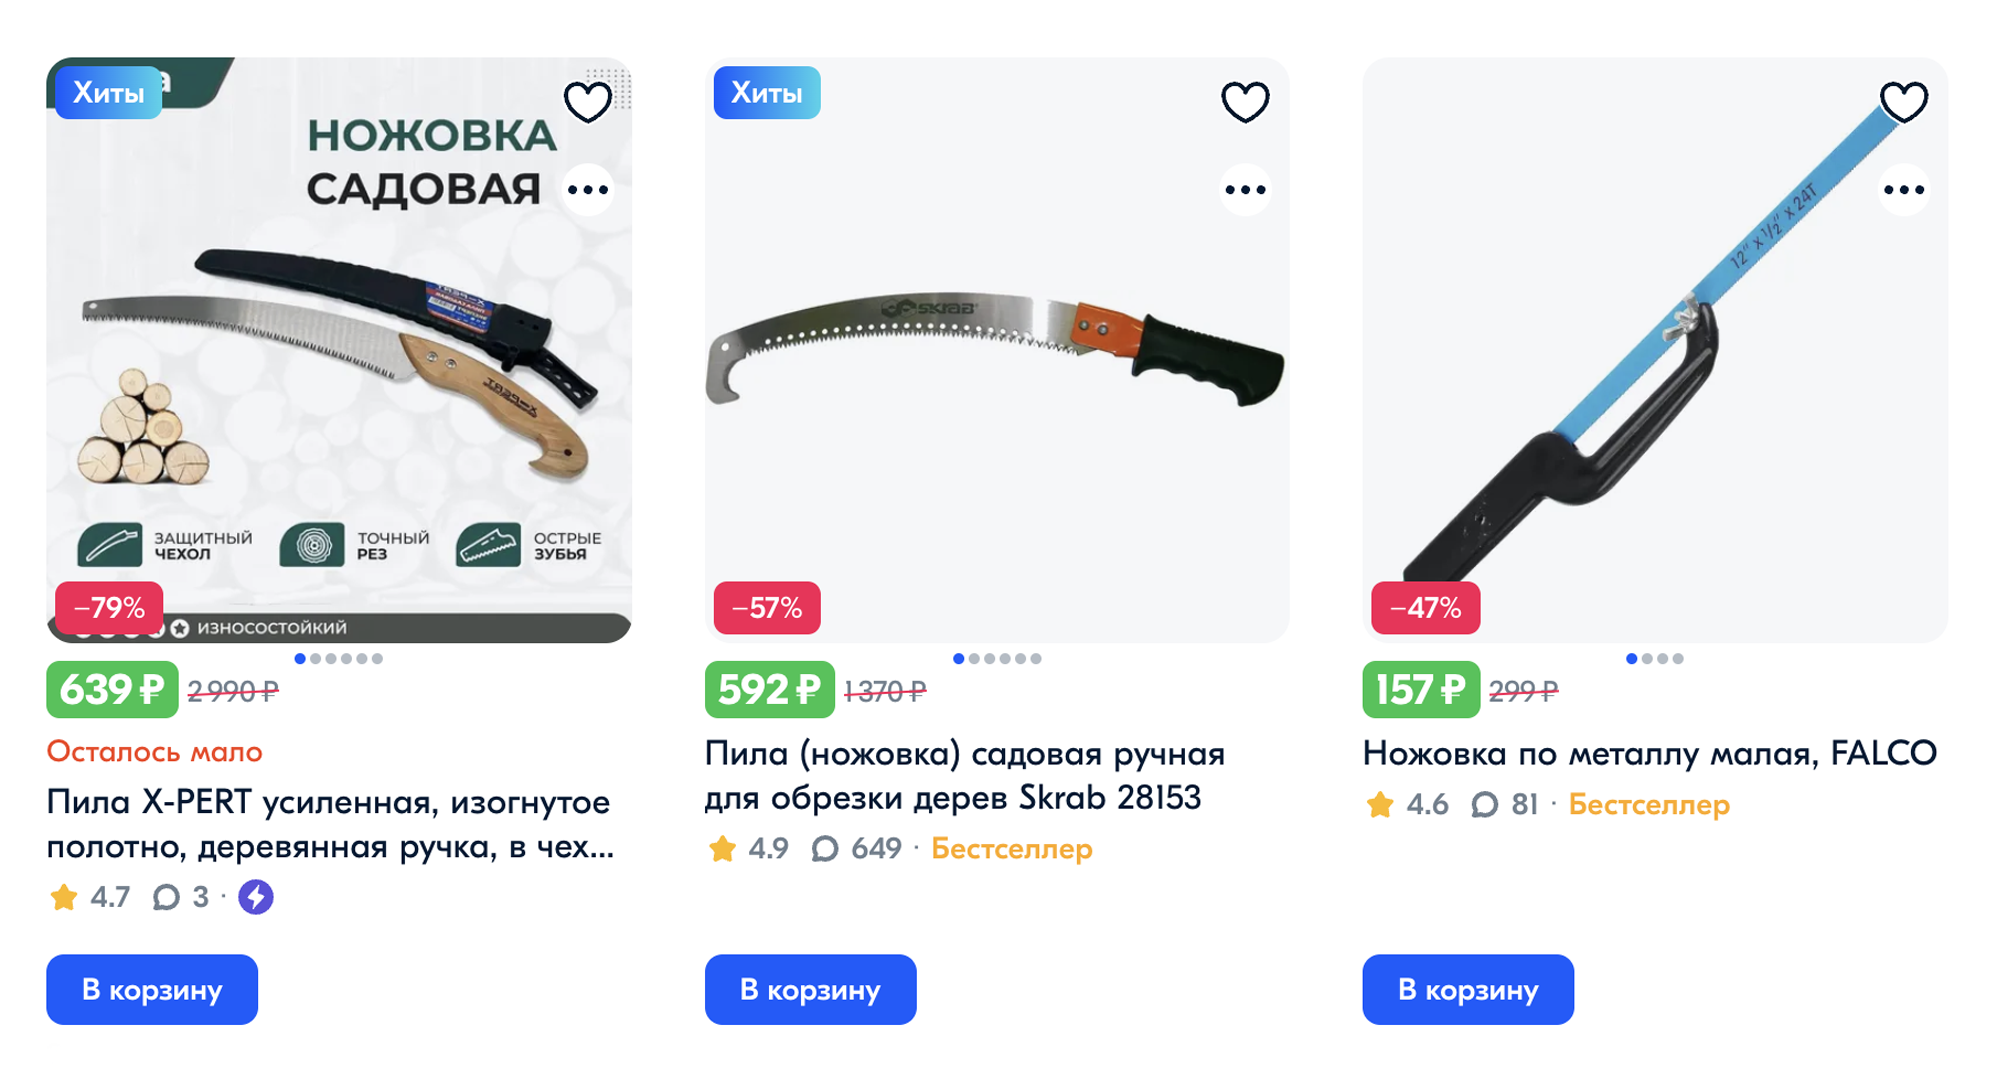 Ножовки можно купить на маркетплейсах, но хорошо бы подержать ее в руке перед покупкой — она должна лежать удобно. Источник: ozon.ru